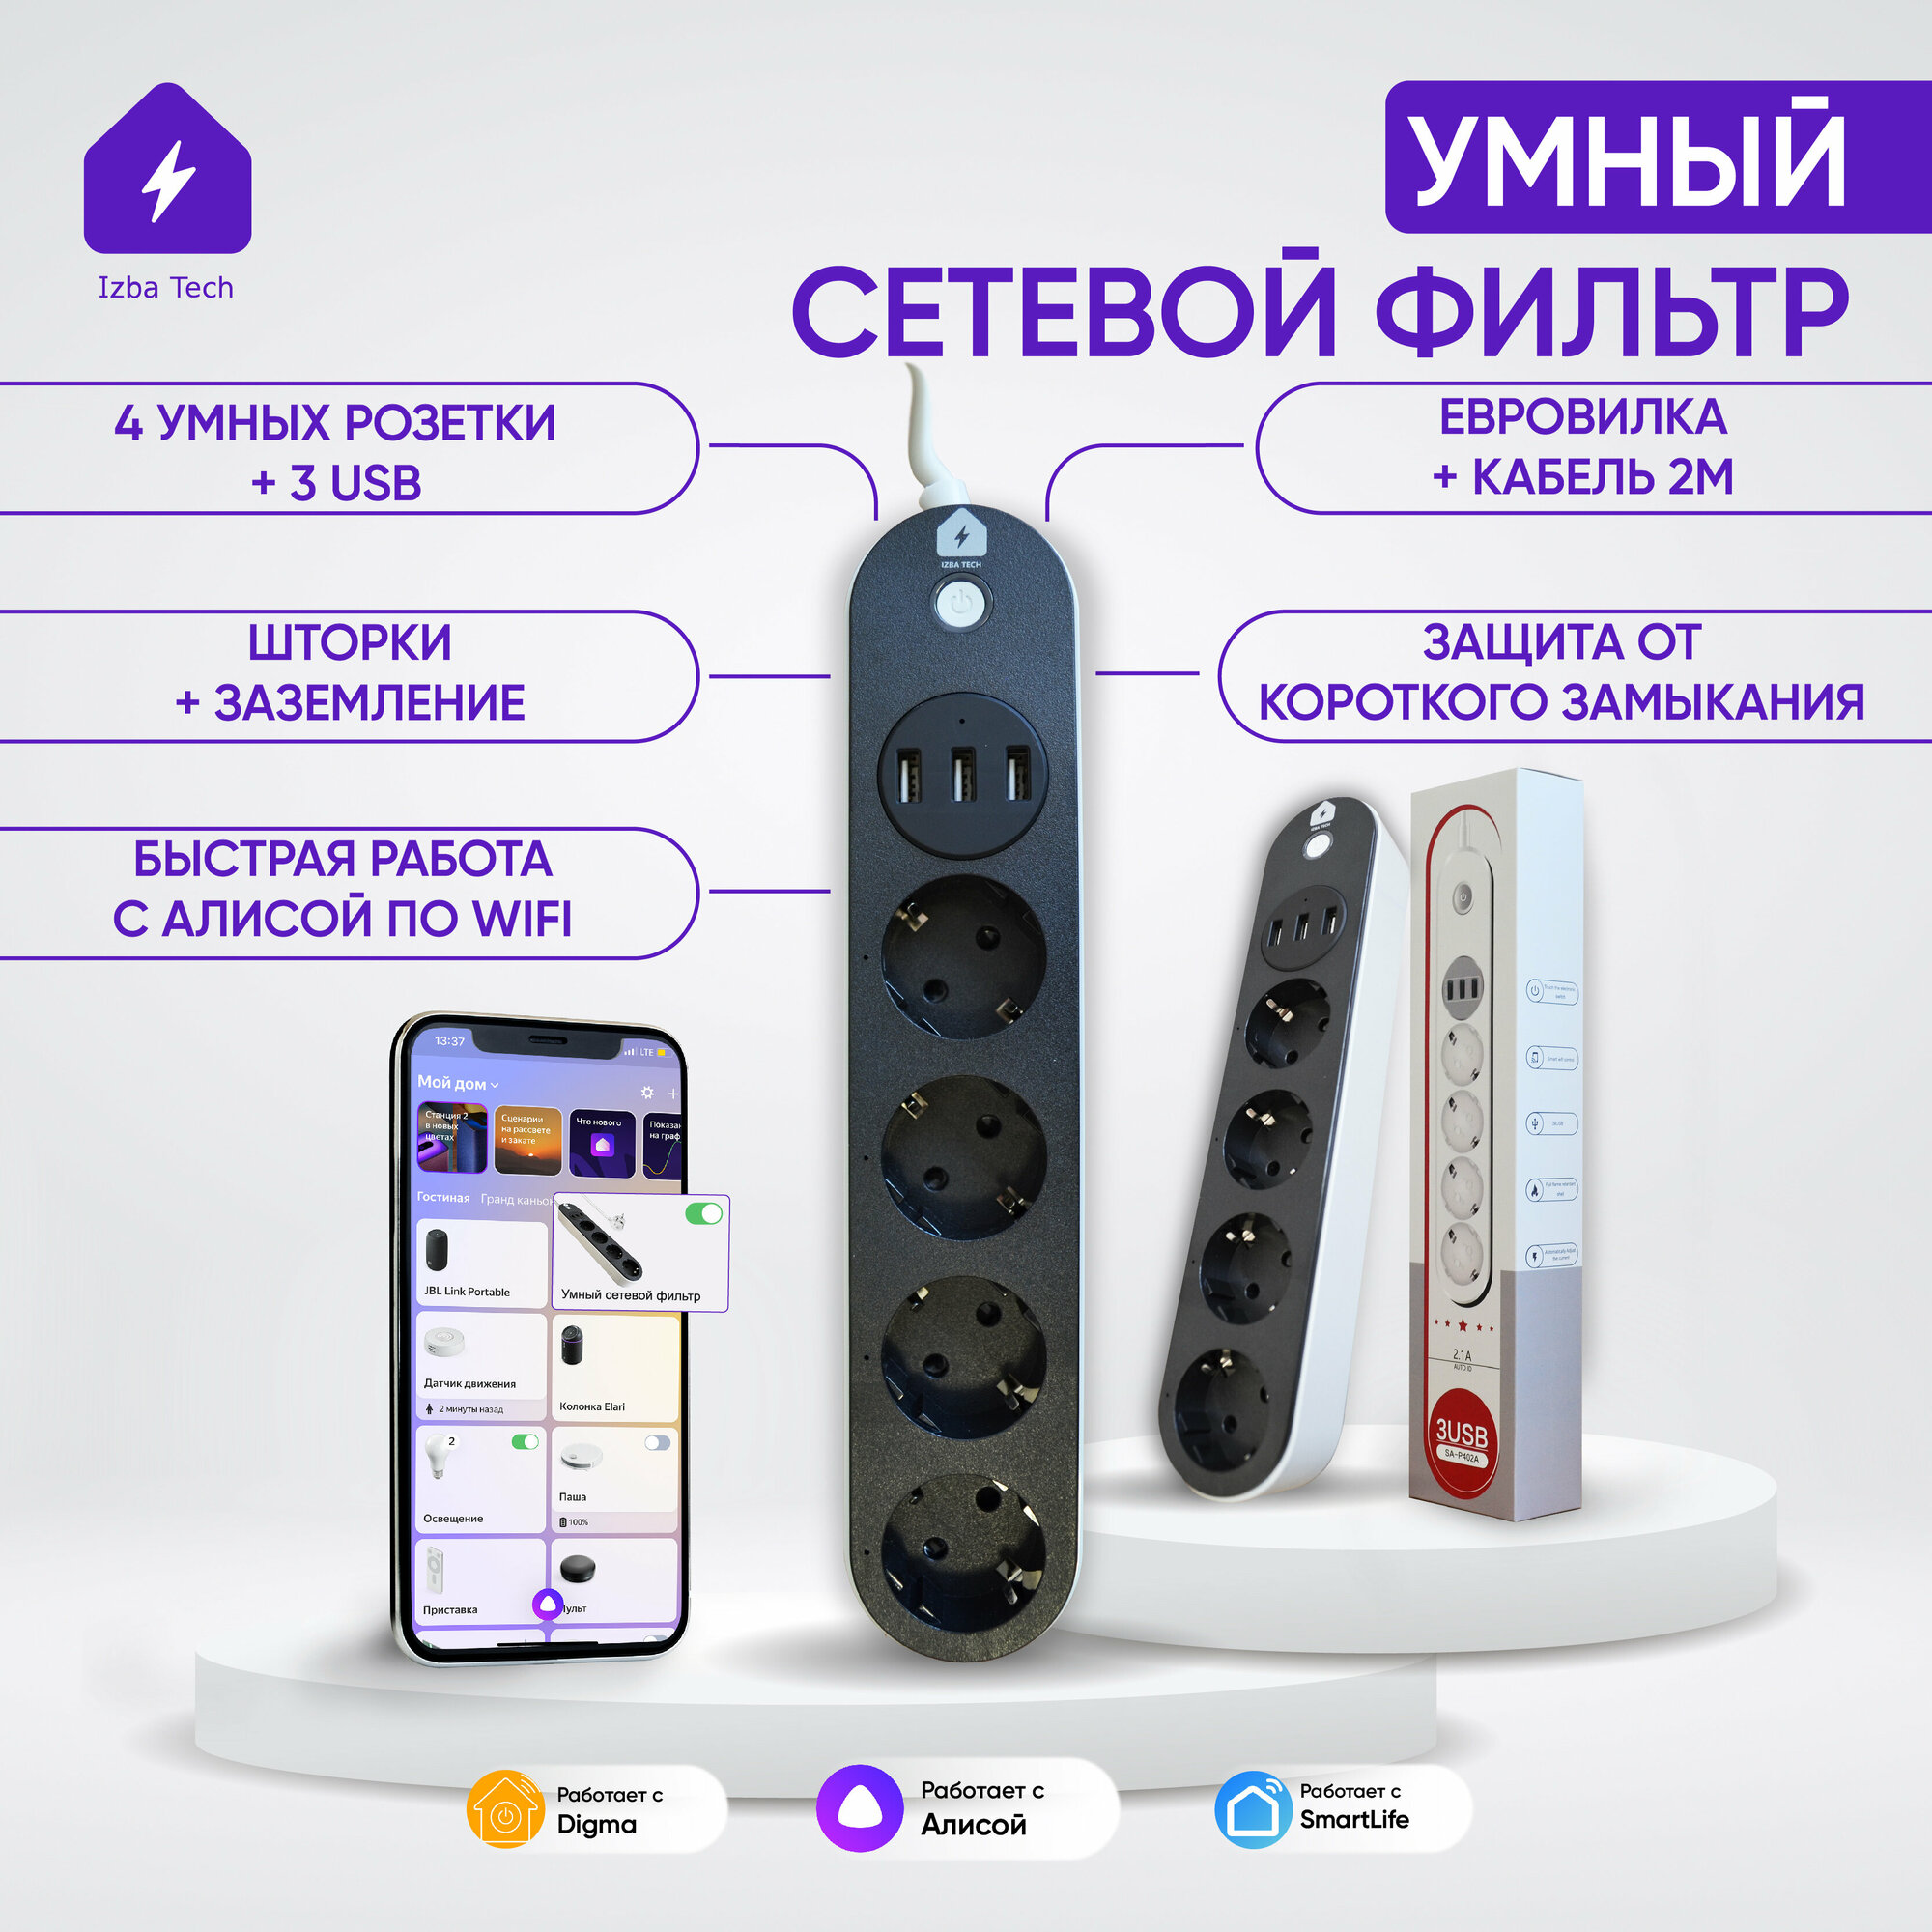 Новый Умный сетевой фильтр удлинитель черного цвета для Яндекс Алисы с WIFI на 4 розетки с USB и заземлением для умного дома